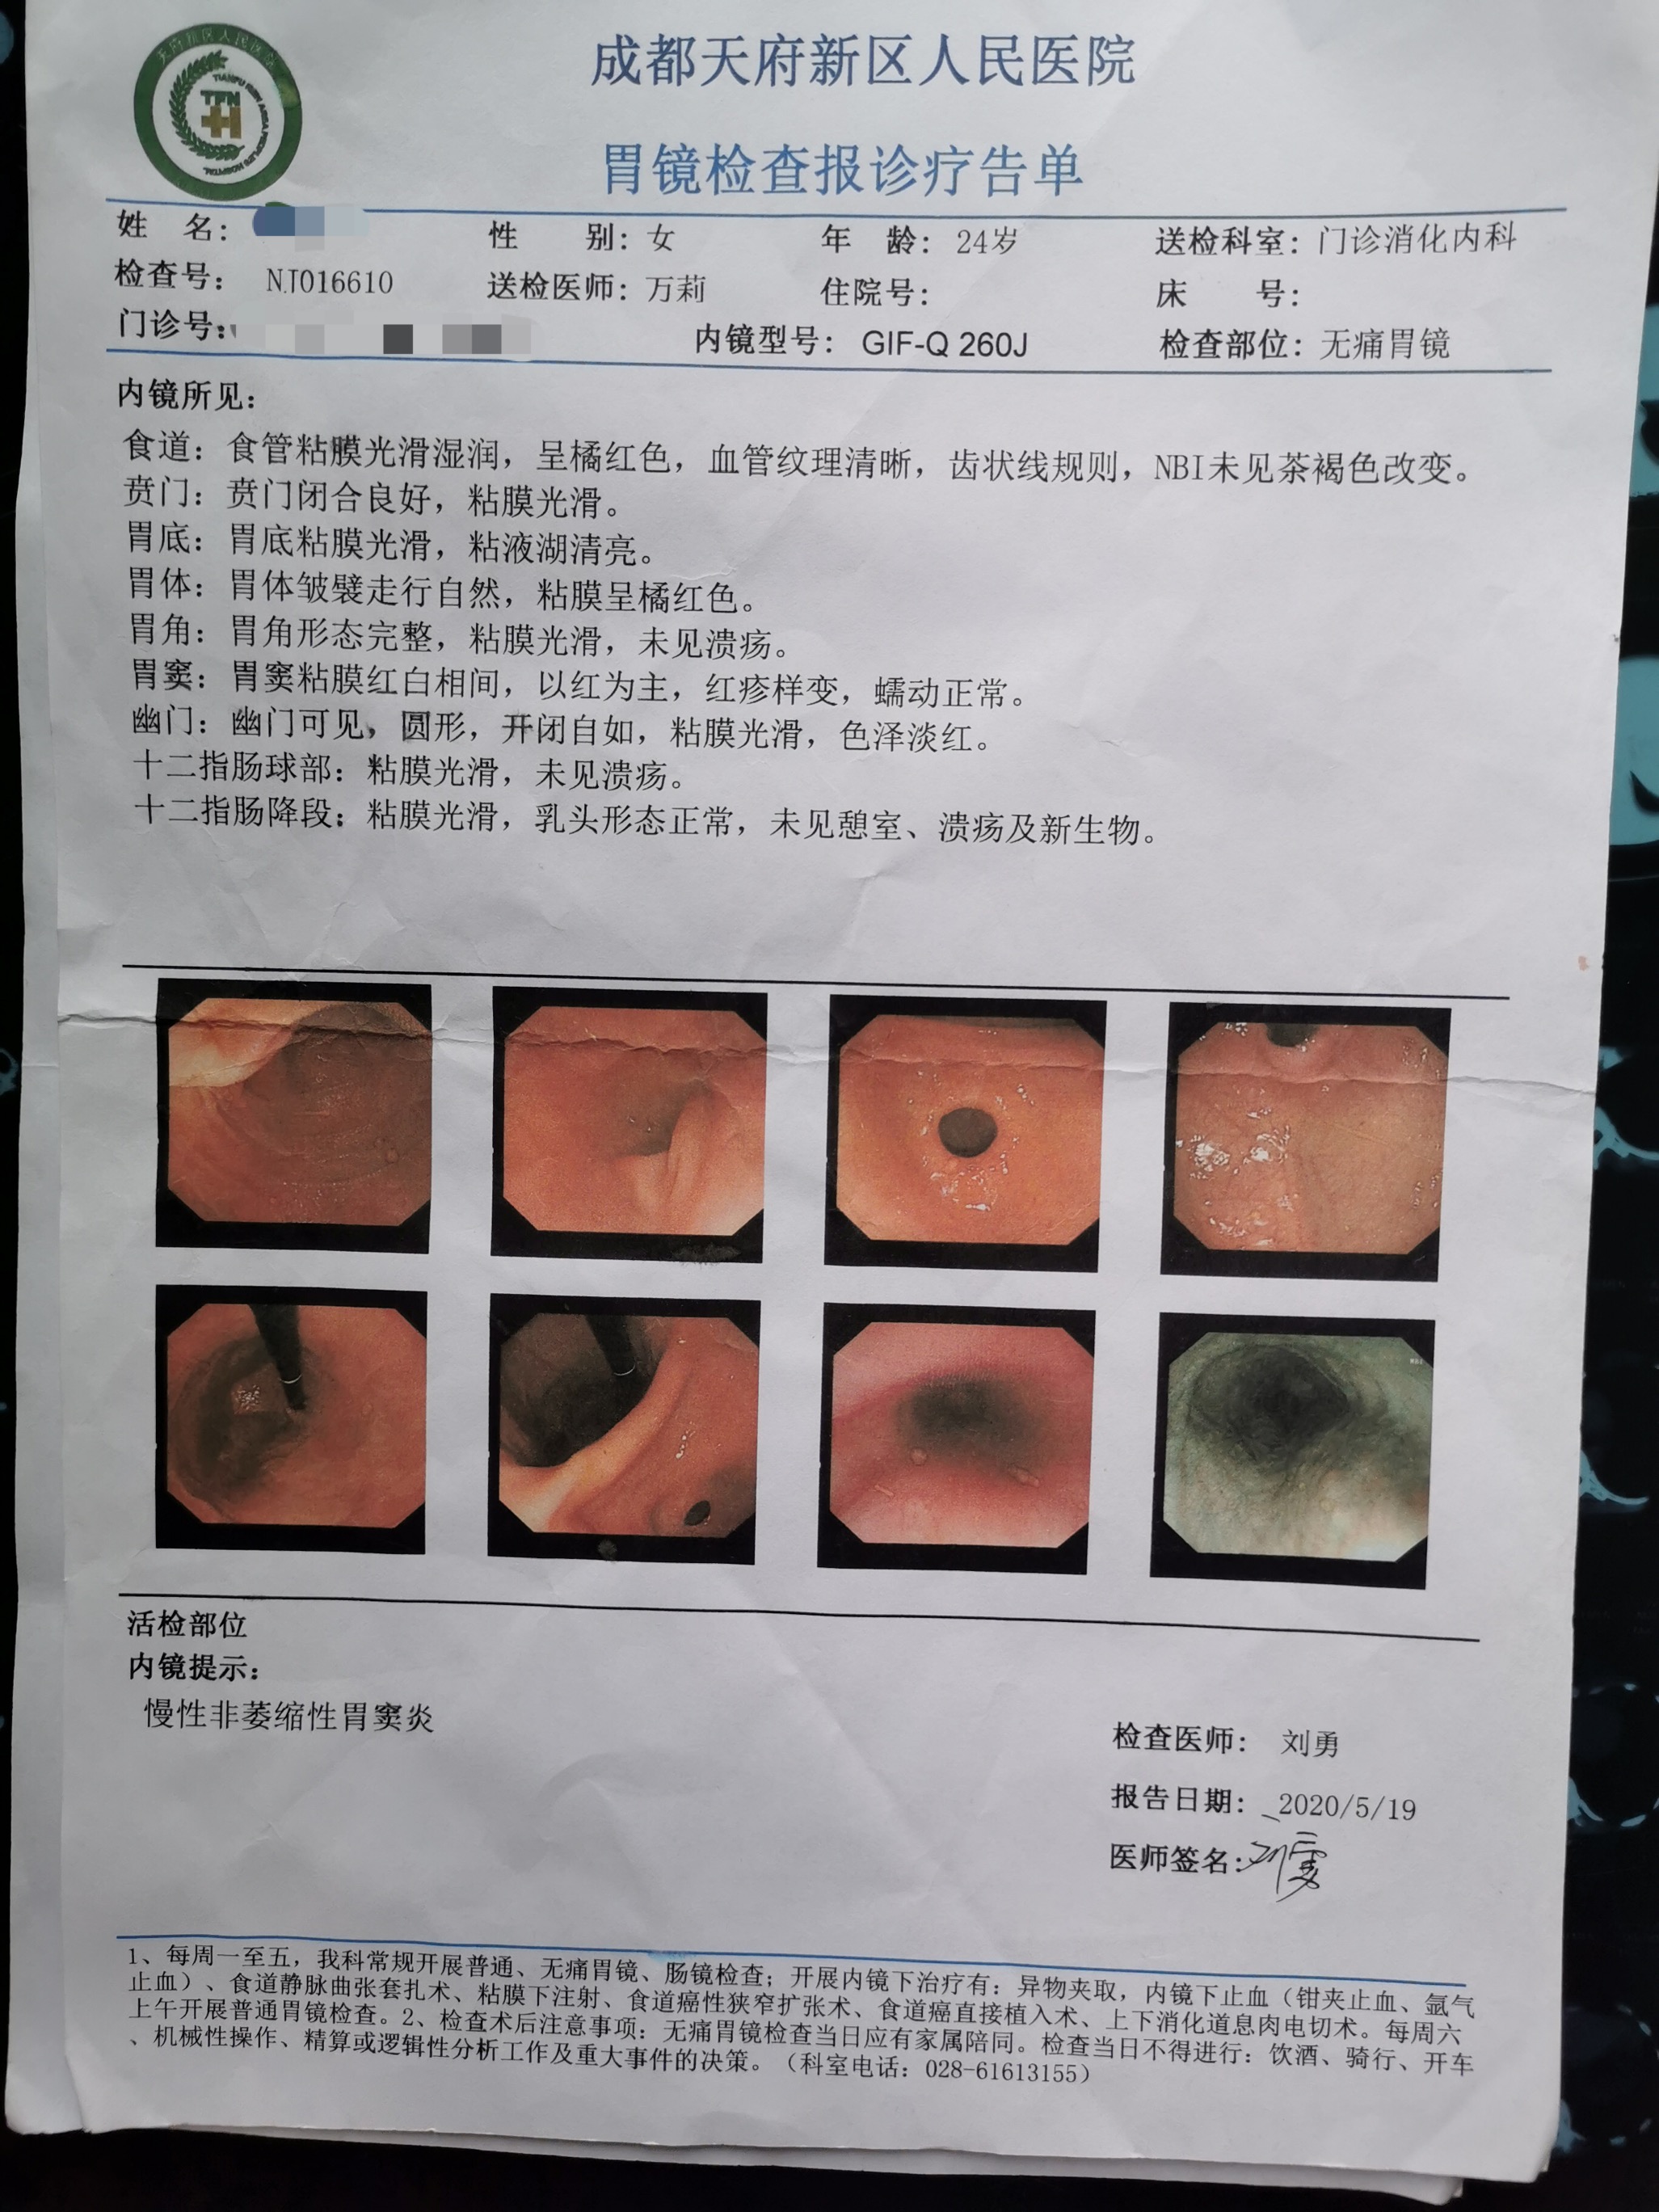 程露5月19日在天府新区人民医院复查的胃镜报告单